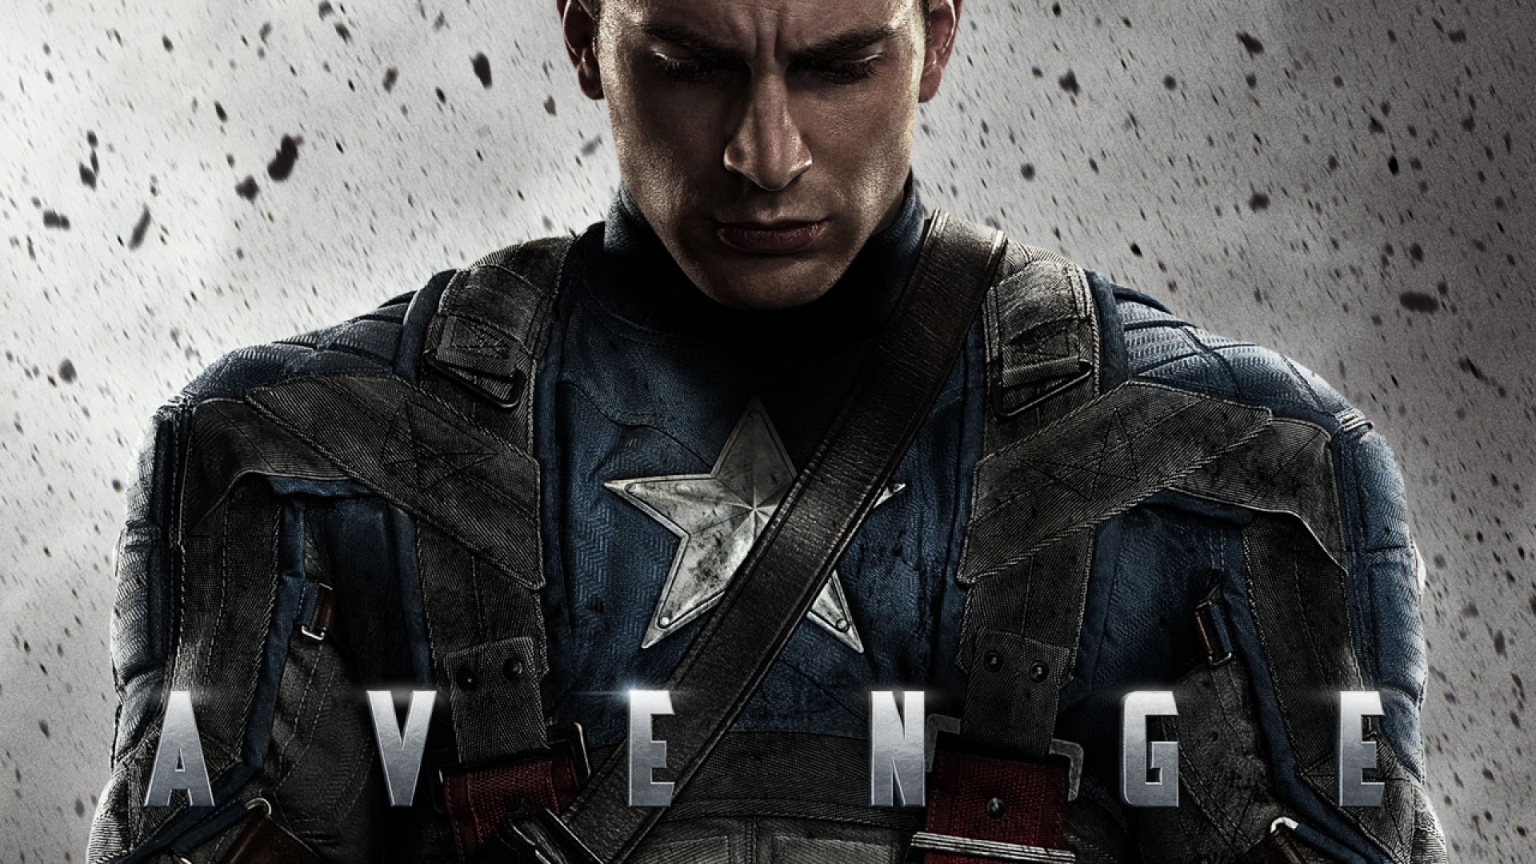 Avenger Captain America for 1536 x 864 HDTV resolution